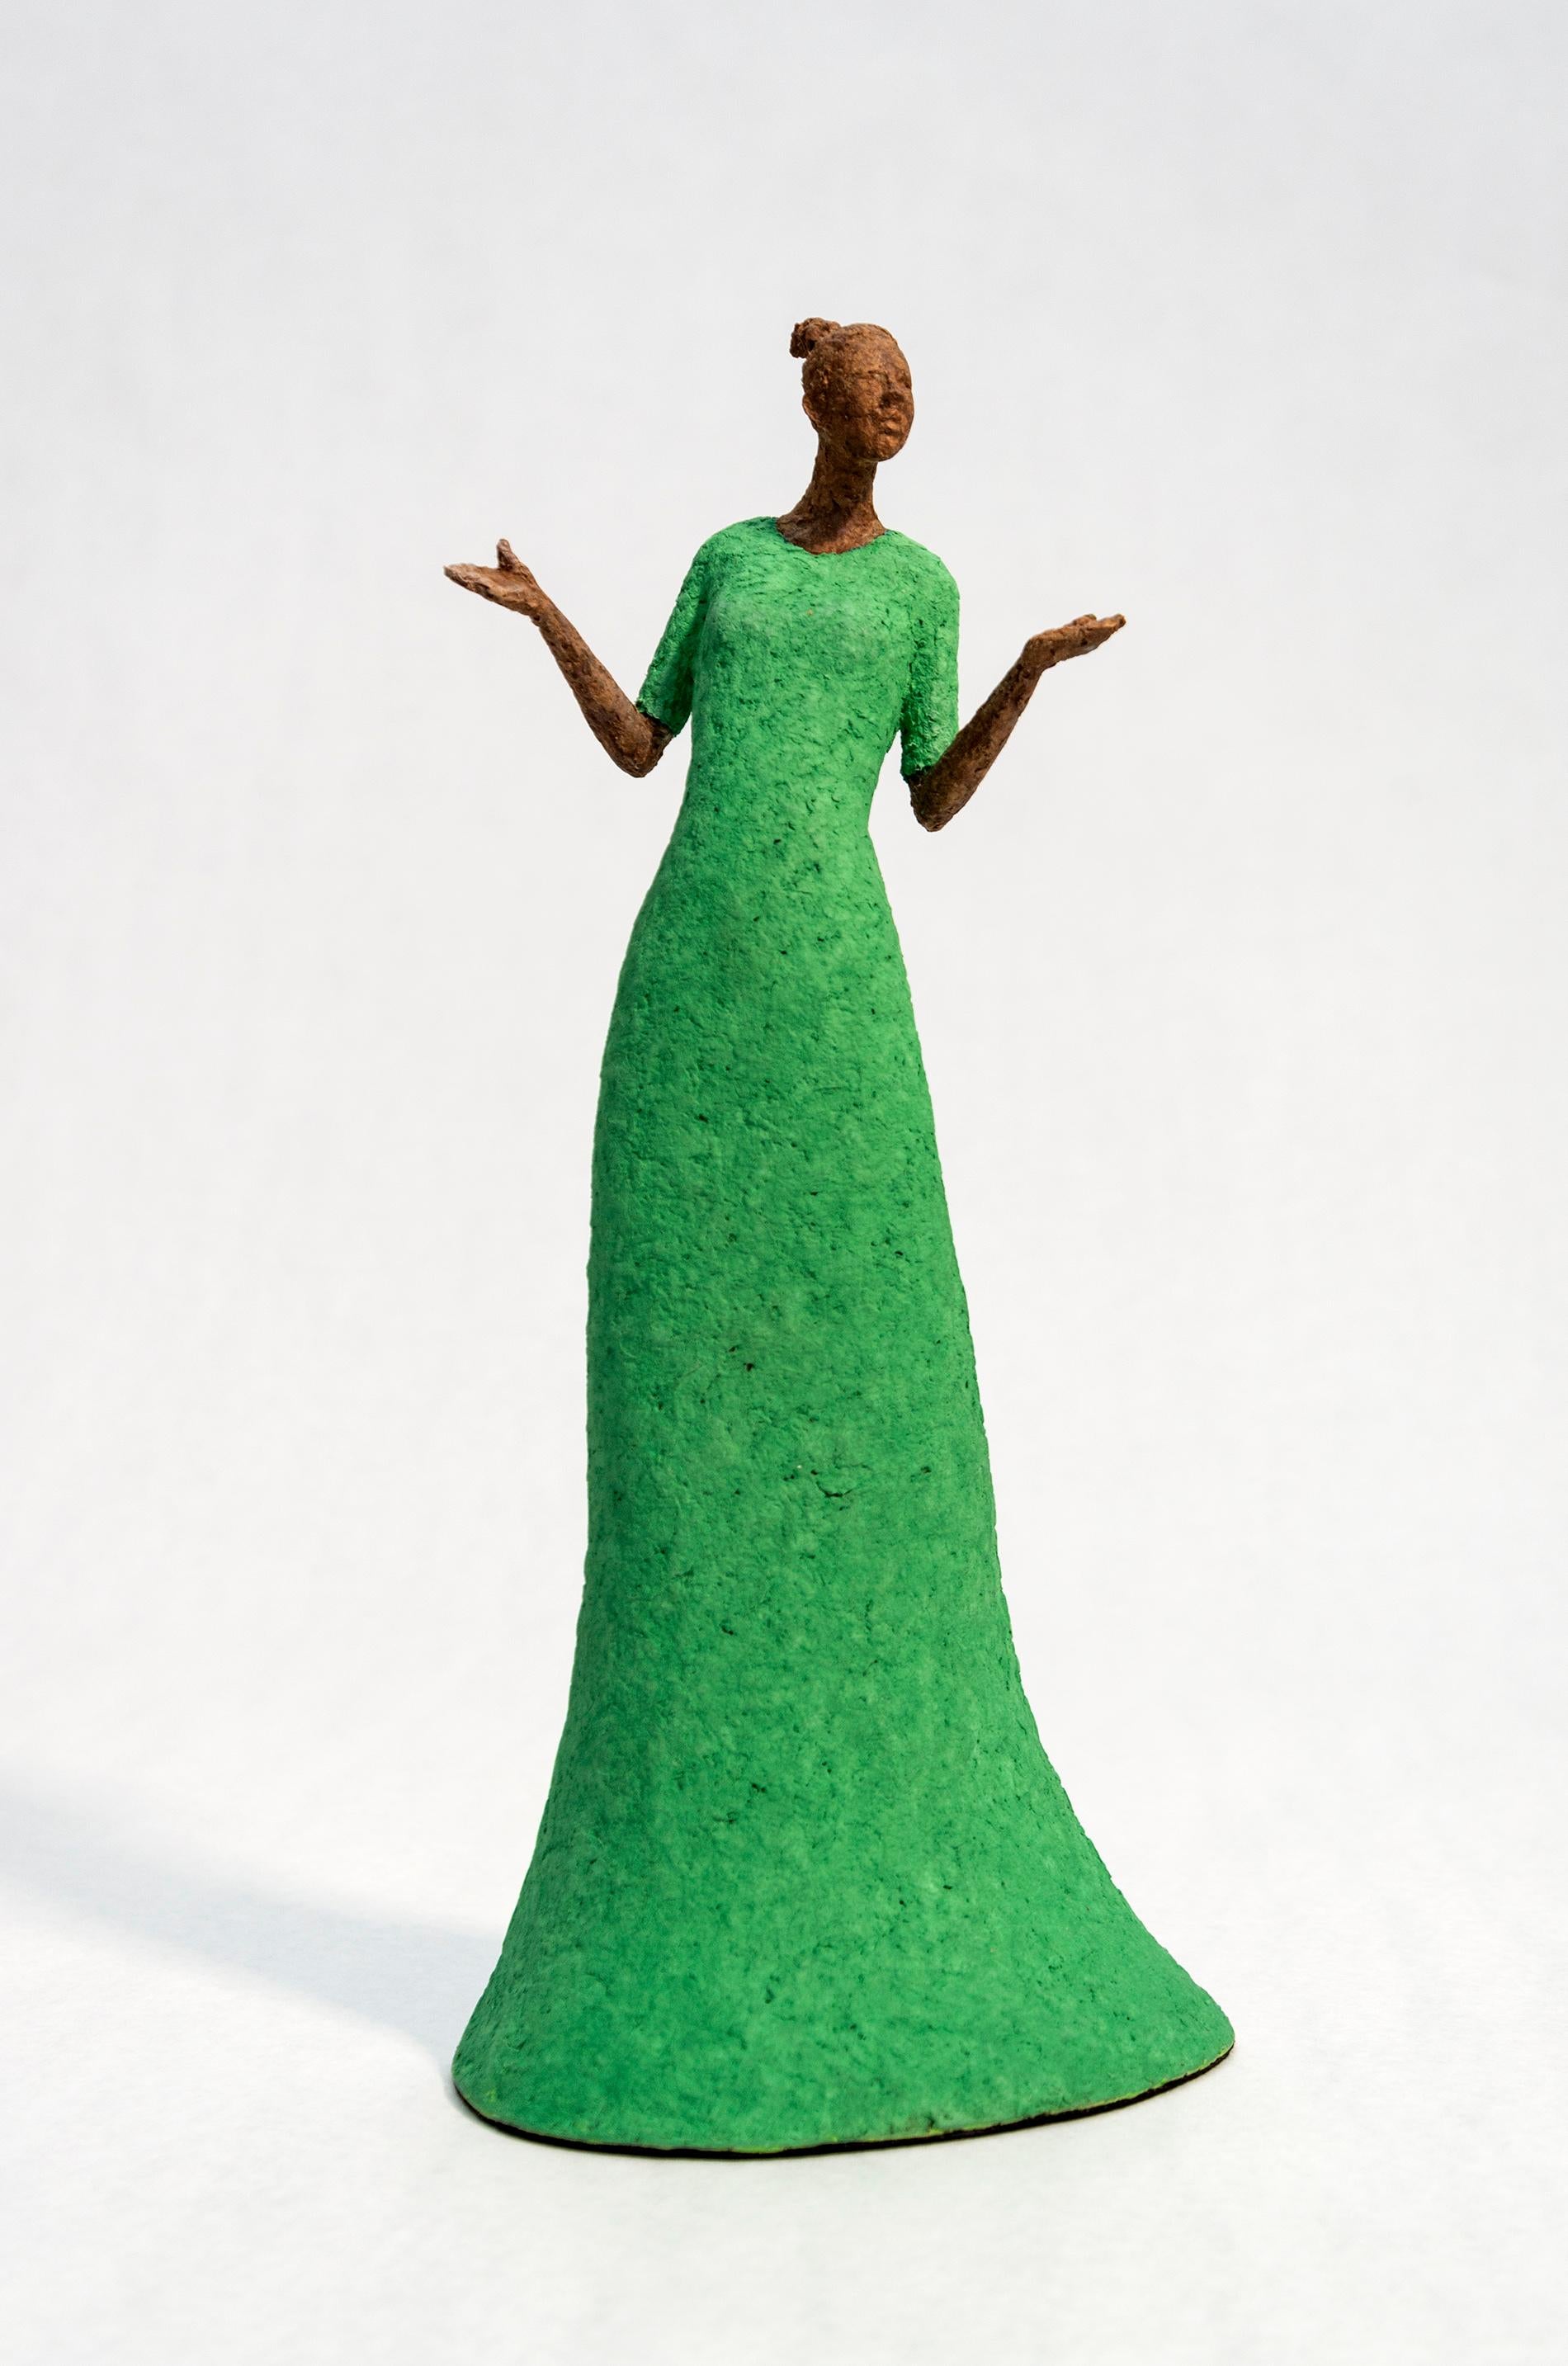 Paul Duval Figurative Sculpture - Bella - bright, expressive, textured, female, figurative, paper Mache sculpture